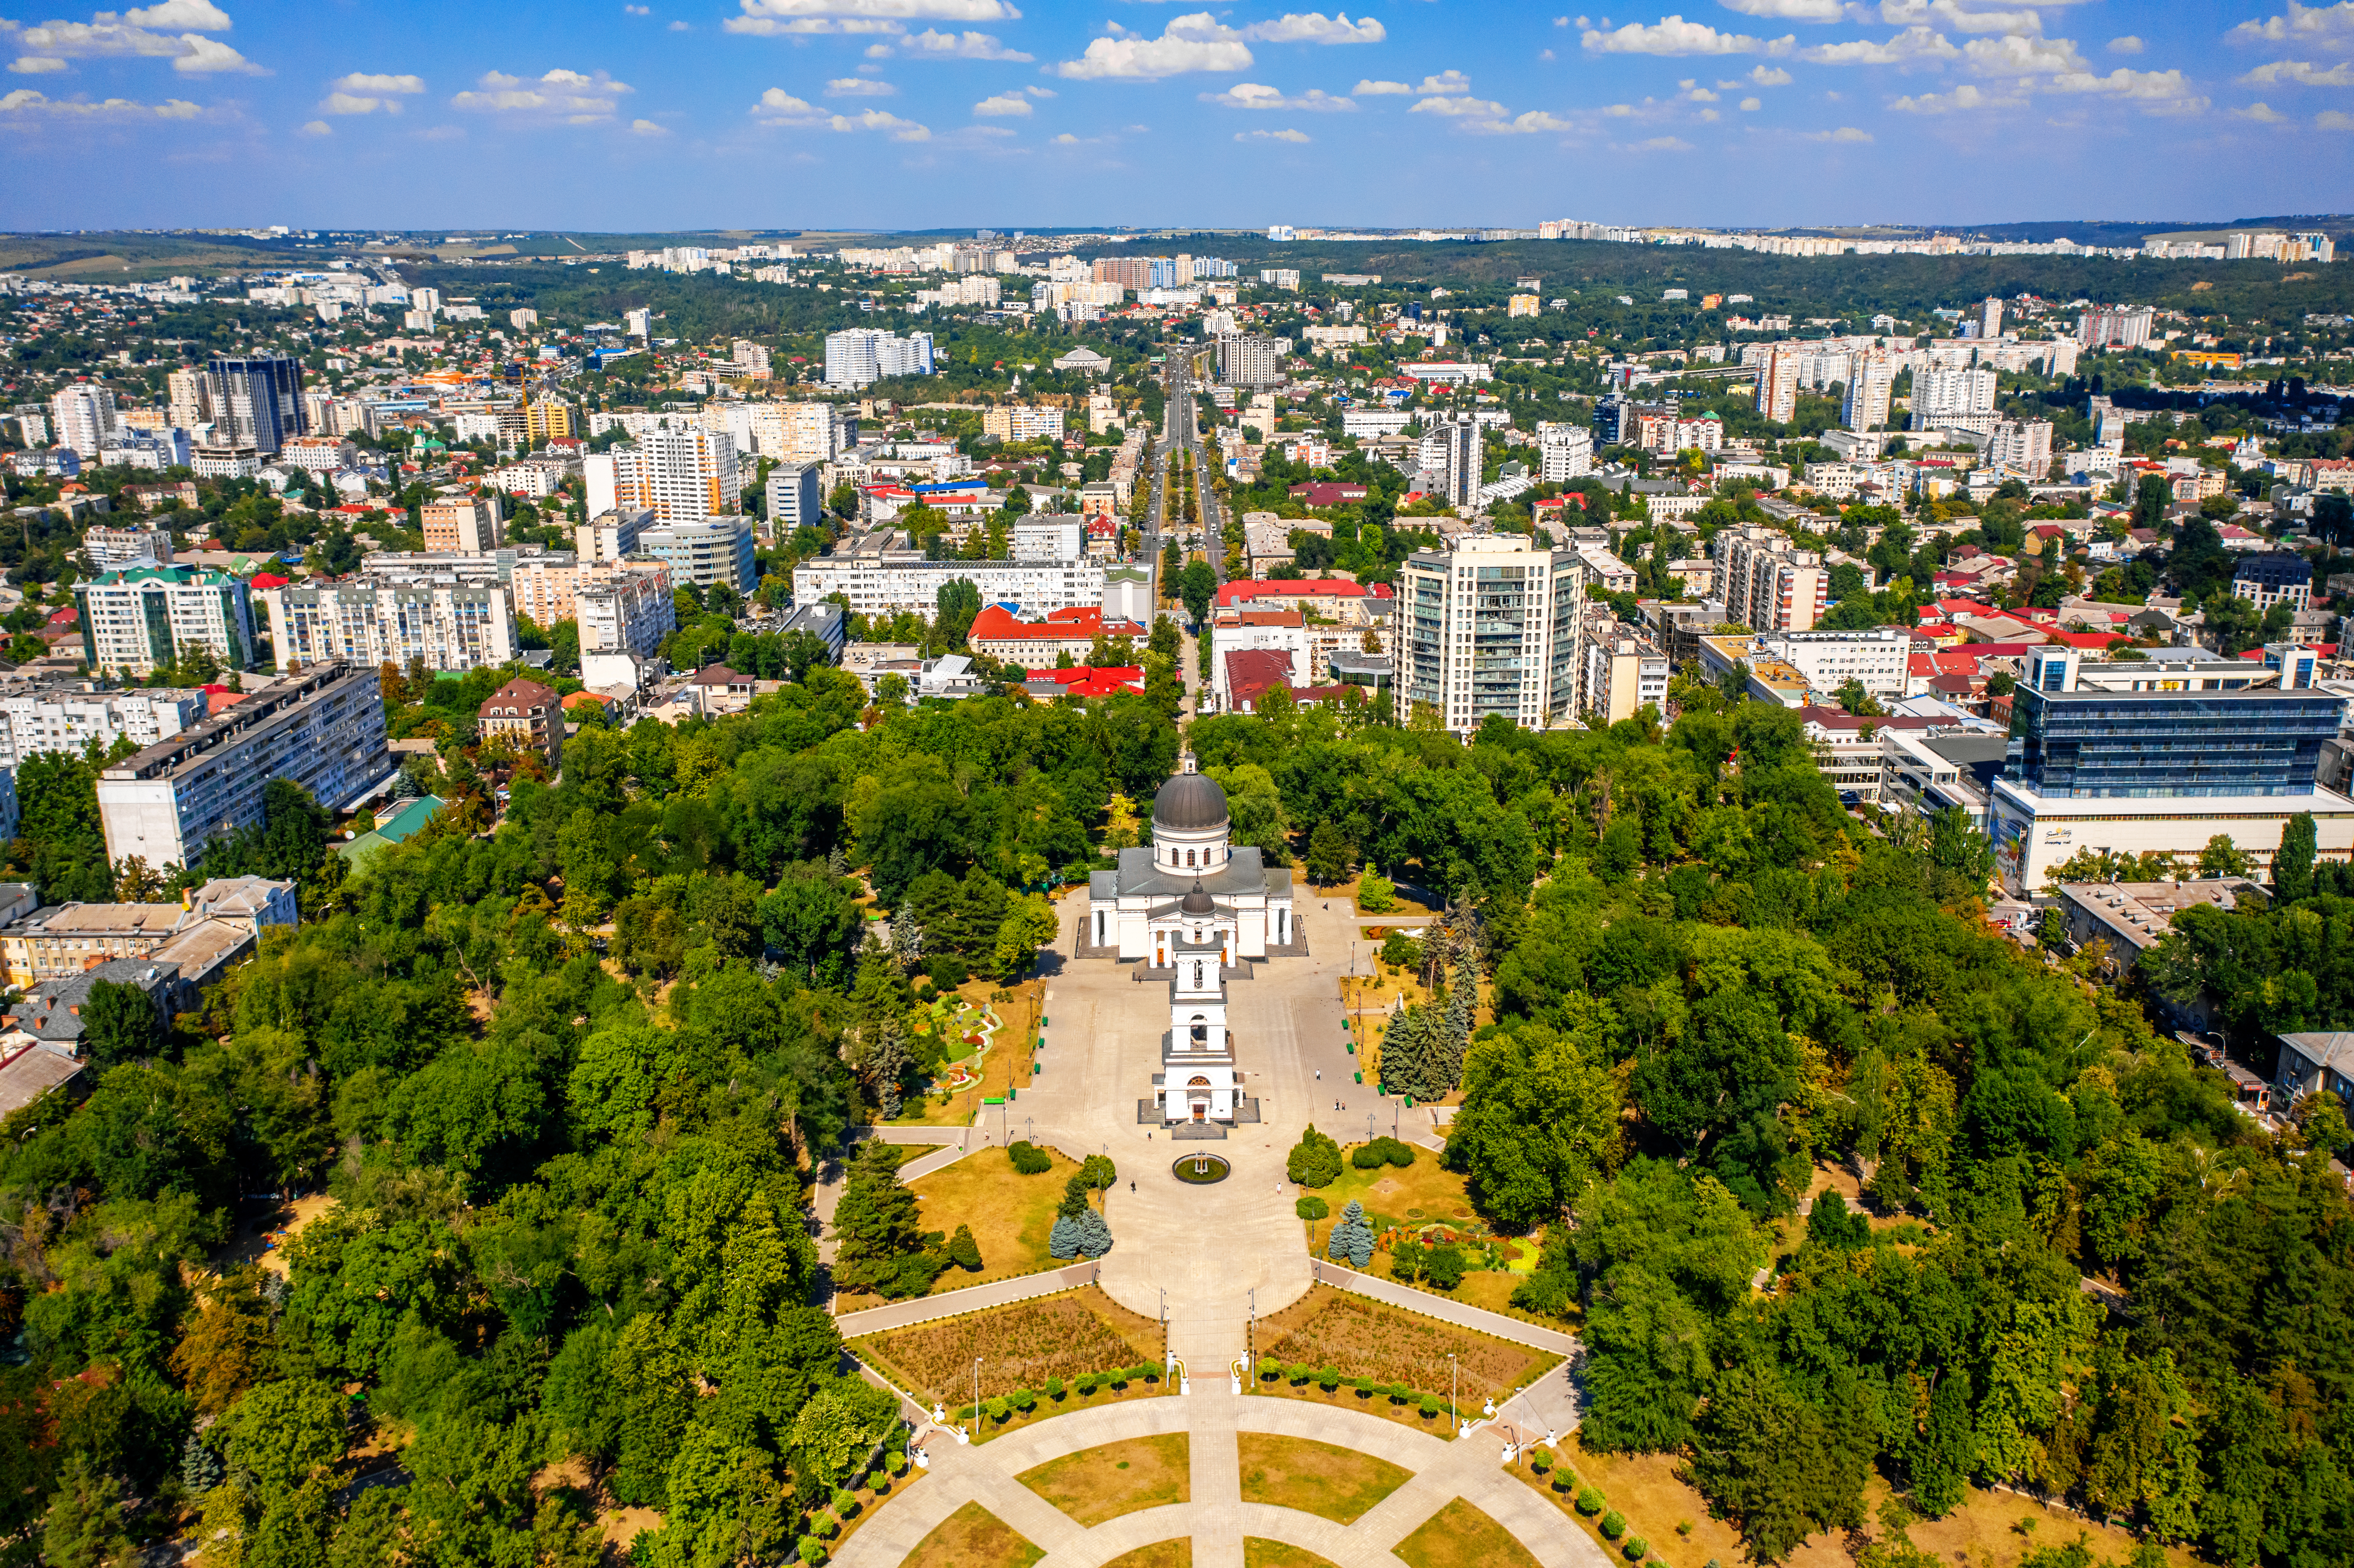 Кишинев, столица Молдовы, ВНЖ которой могут получить россияне, украинцы и белорусы